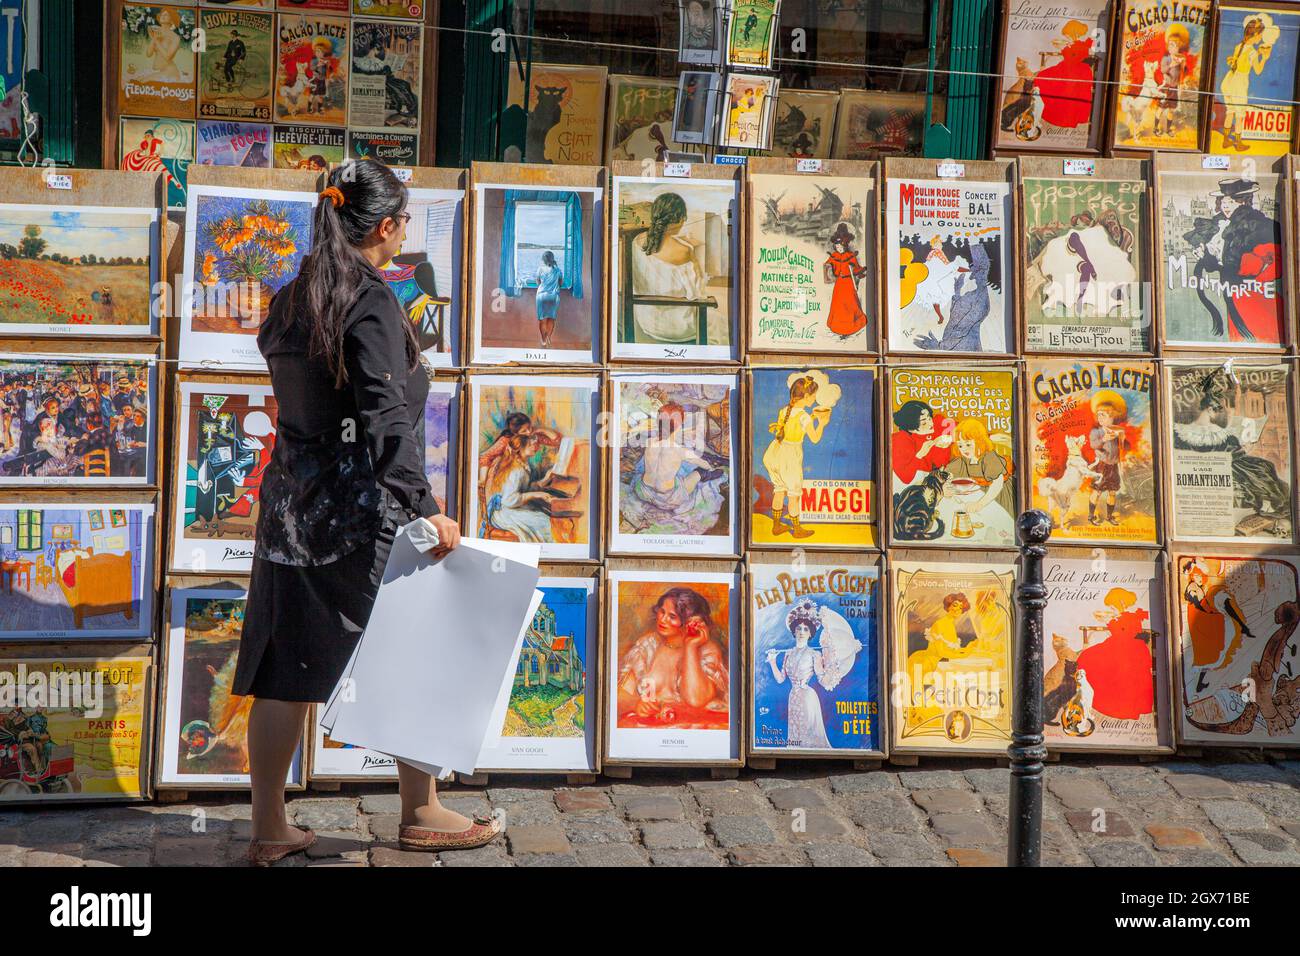 Mercante femminile che vende stampe di opere d'arte storiche rese famose a Parigi e dintorni - Montmartre, Parigi, Francia Foto Stock